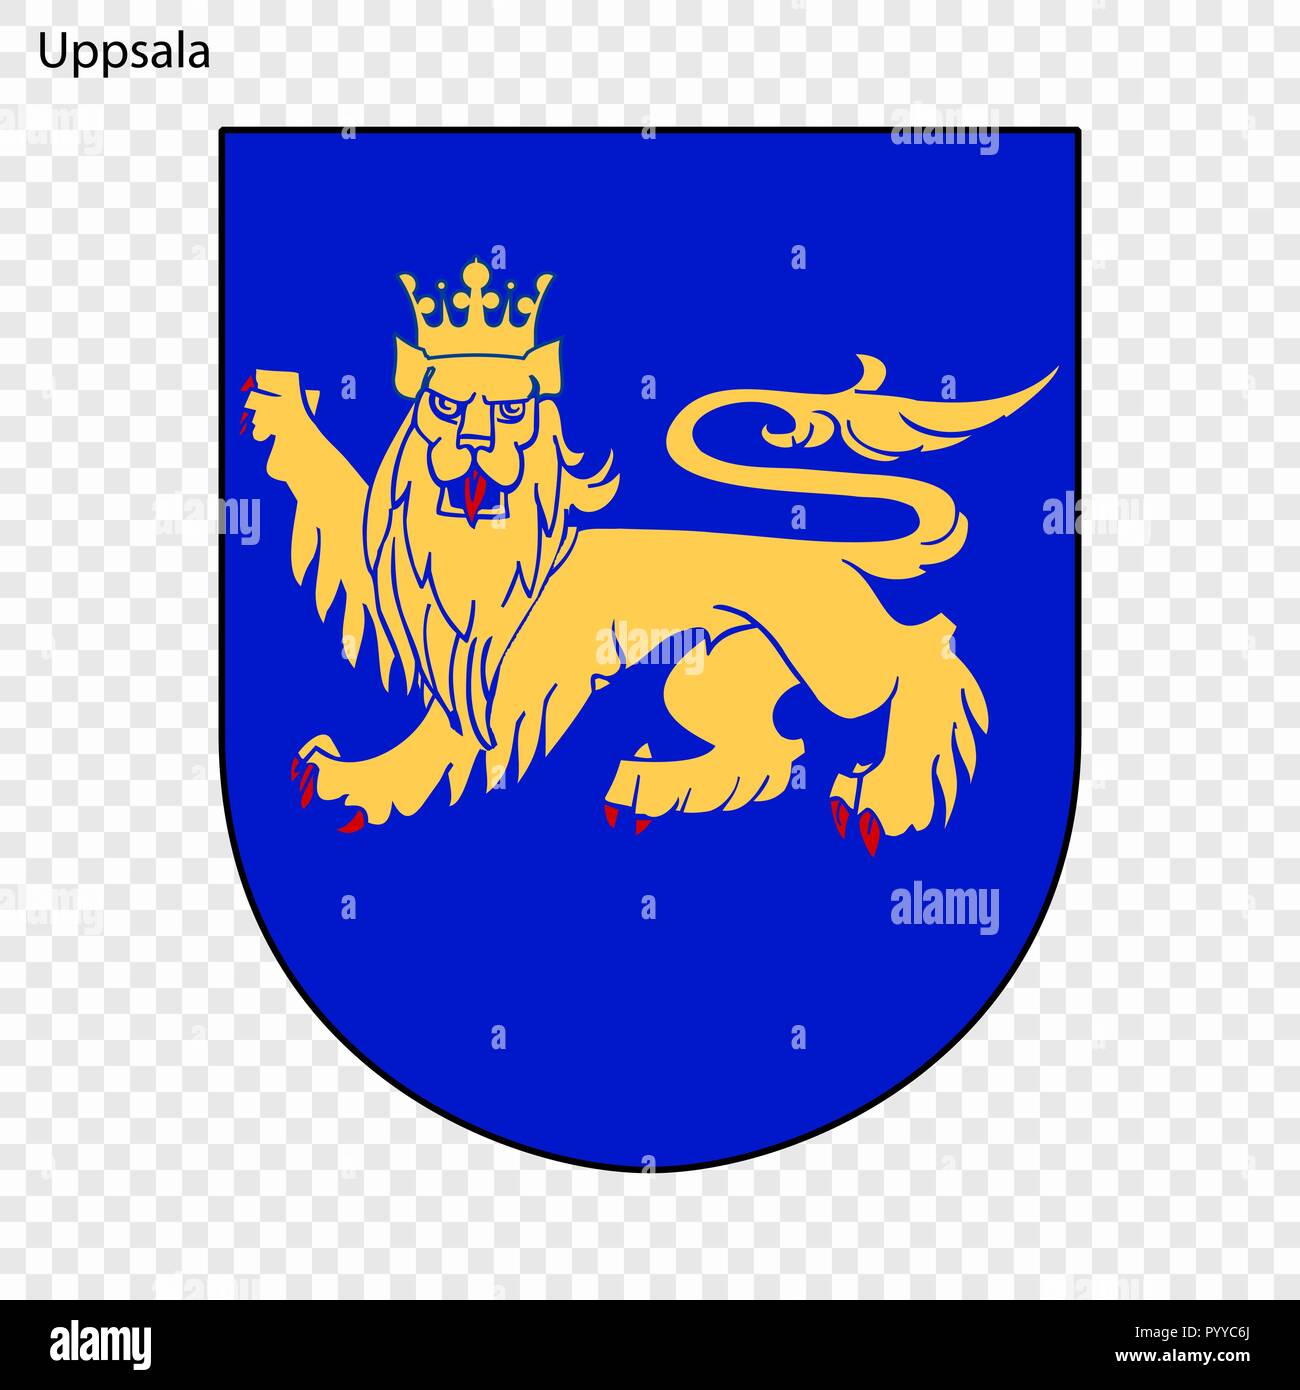 Emblema di Uppsala. Città della Svezia. Illustrazione Vettoriale Illustrazione Vettoriale